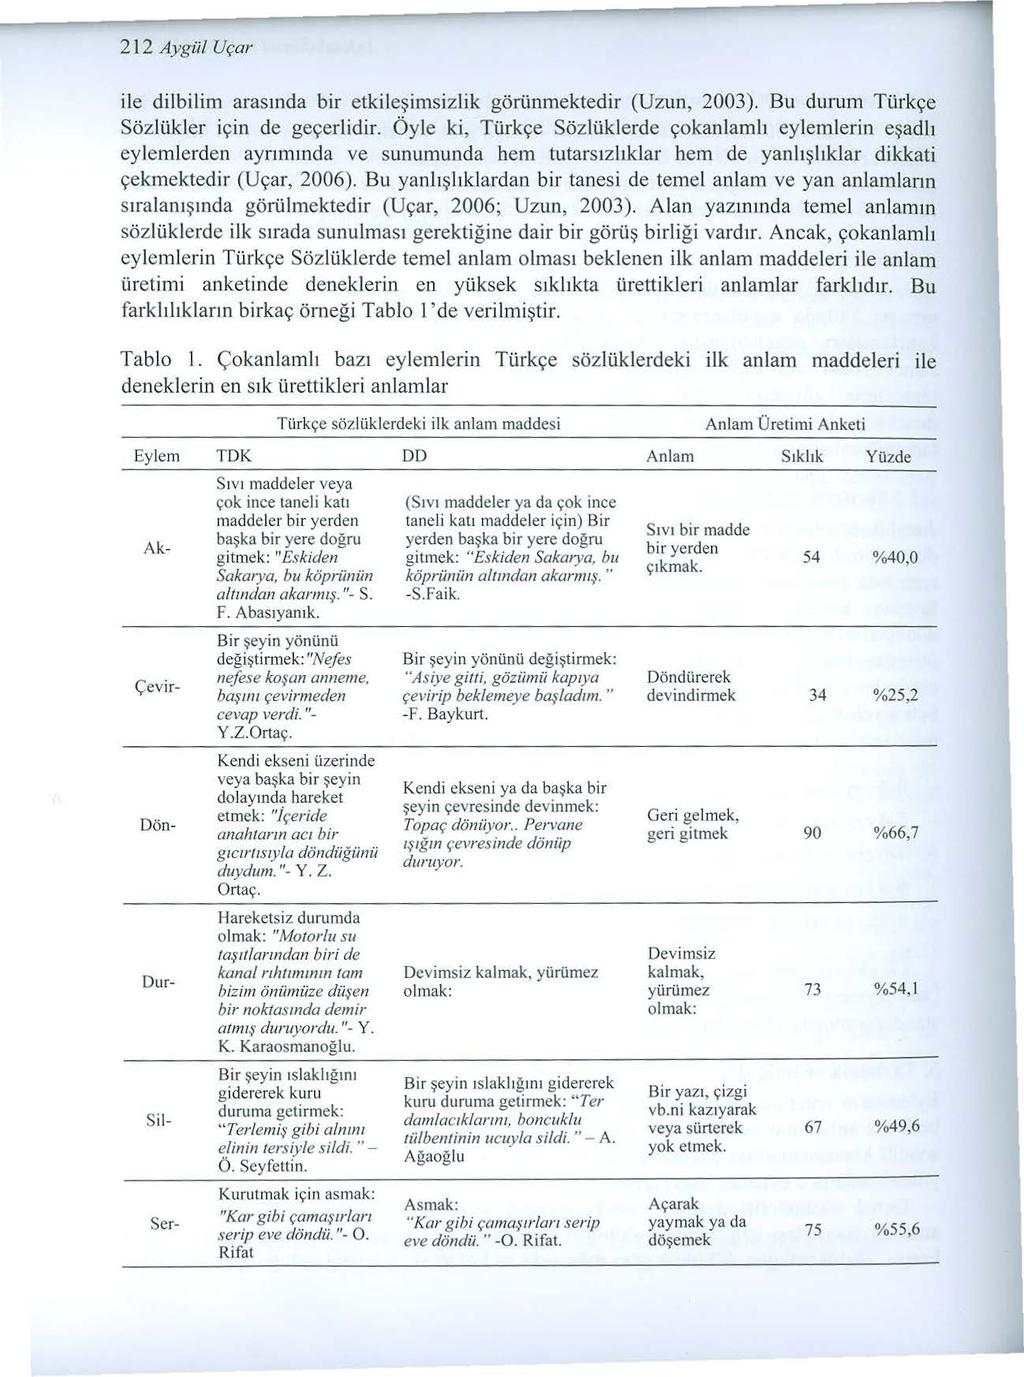 212 Aygül Uçar ile dilbilim aras ında bir etki l eşimsiz lik görünmektedir (Uzun, 2003). Bu durum Türkçe Sözlükler için de geçerlidir.